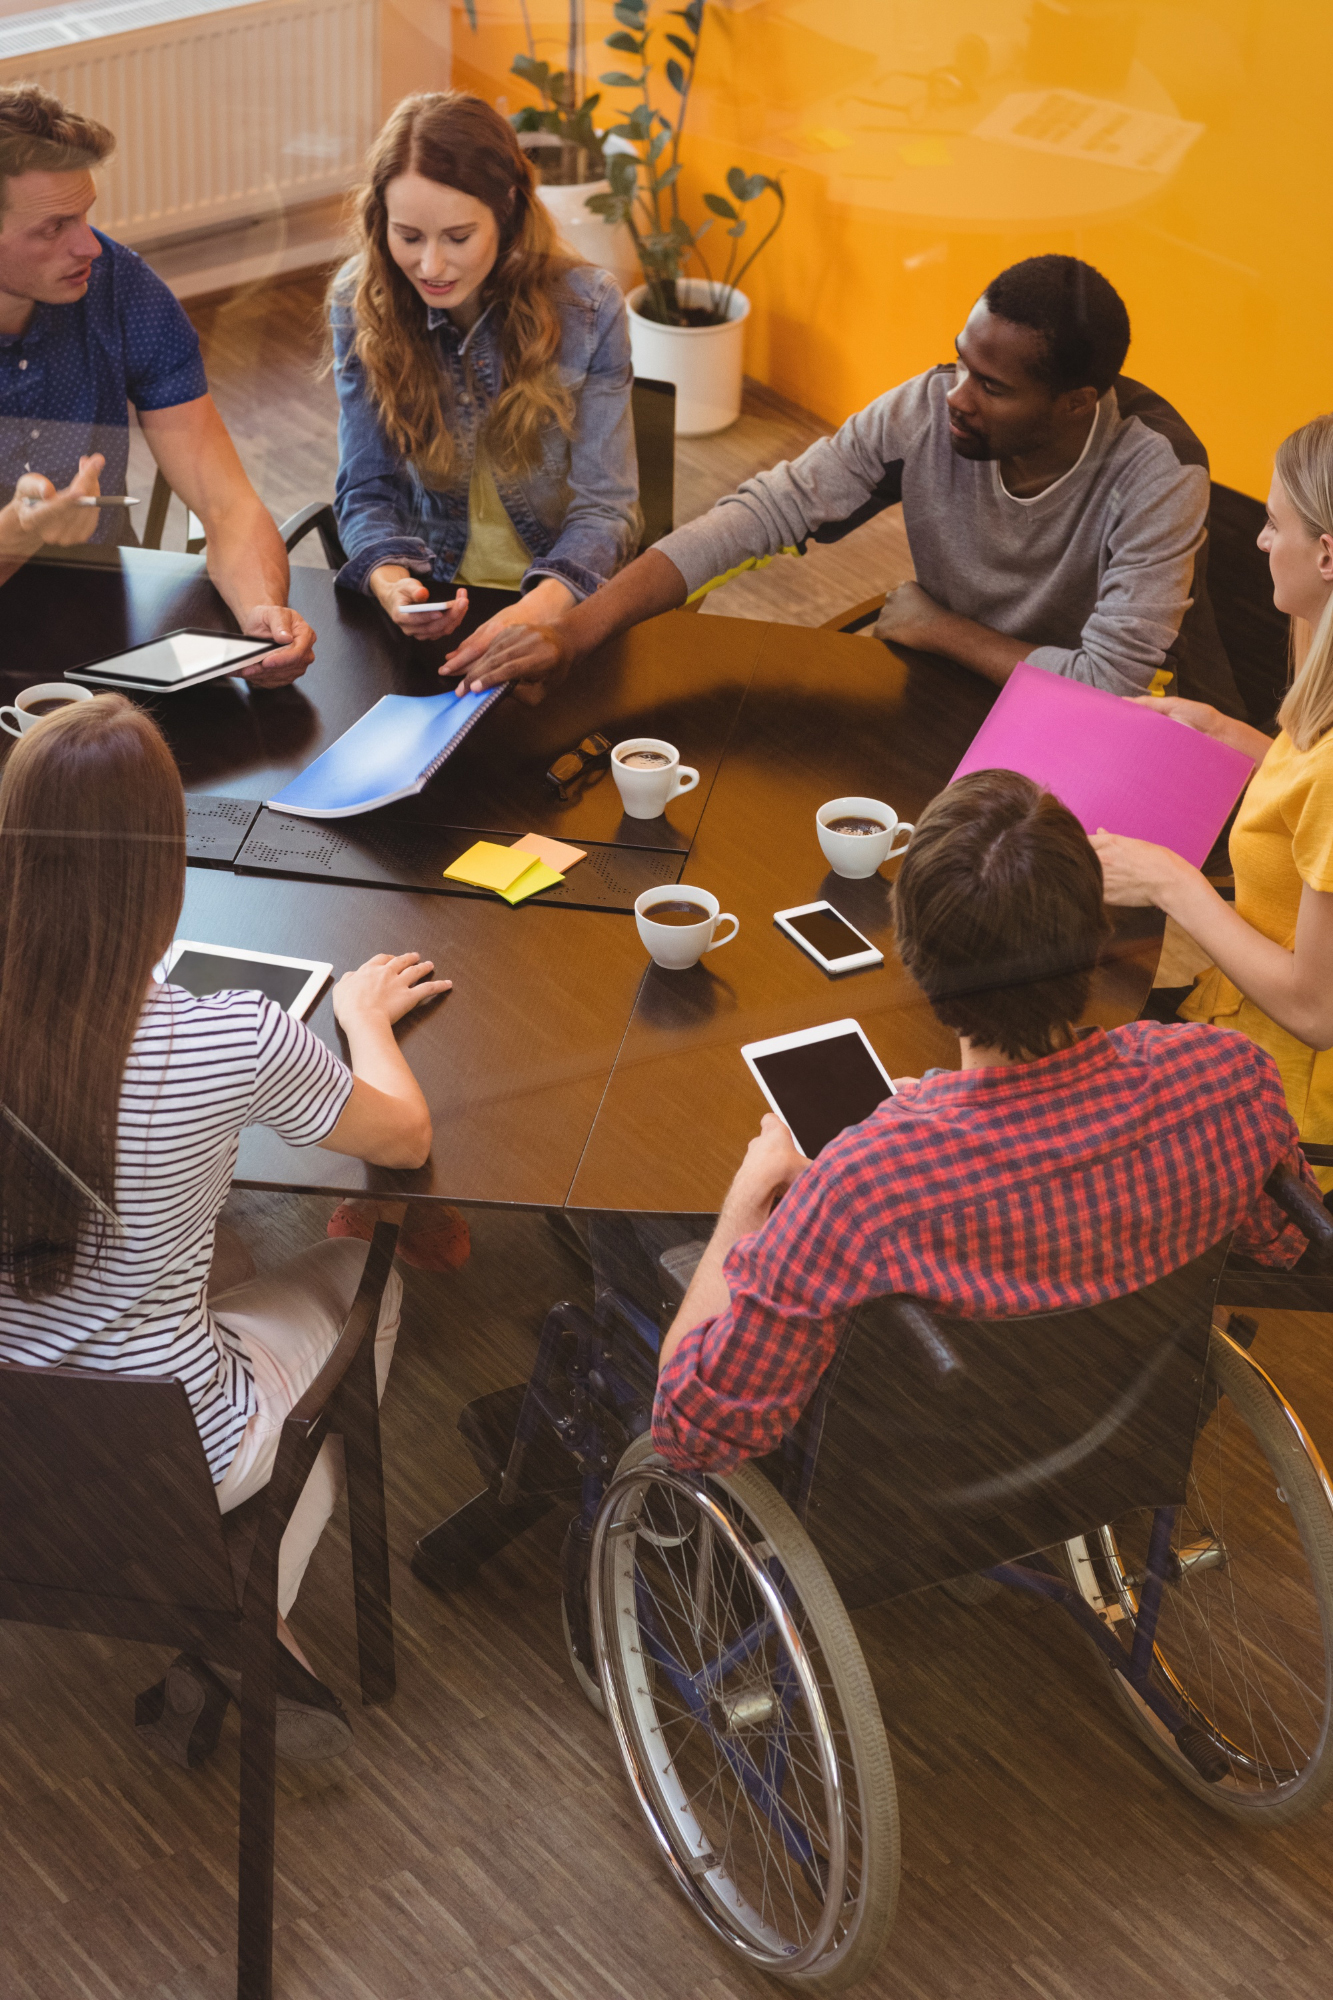 Imagen inclusiva de ejecutivos de negocios que interactúan alrededor de una mesa